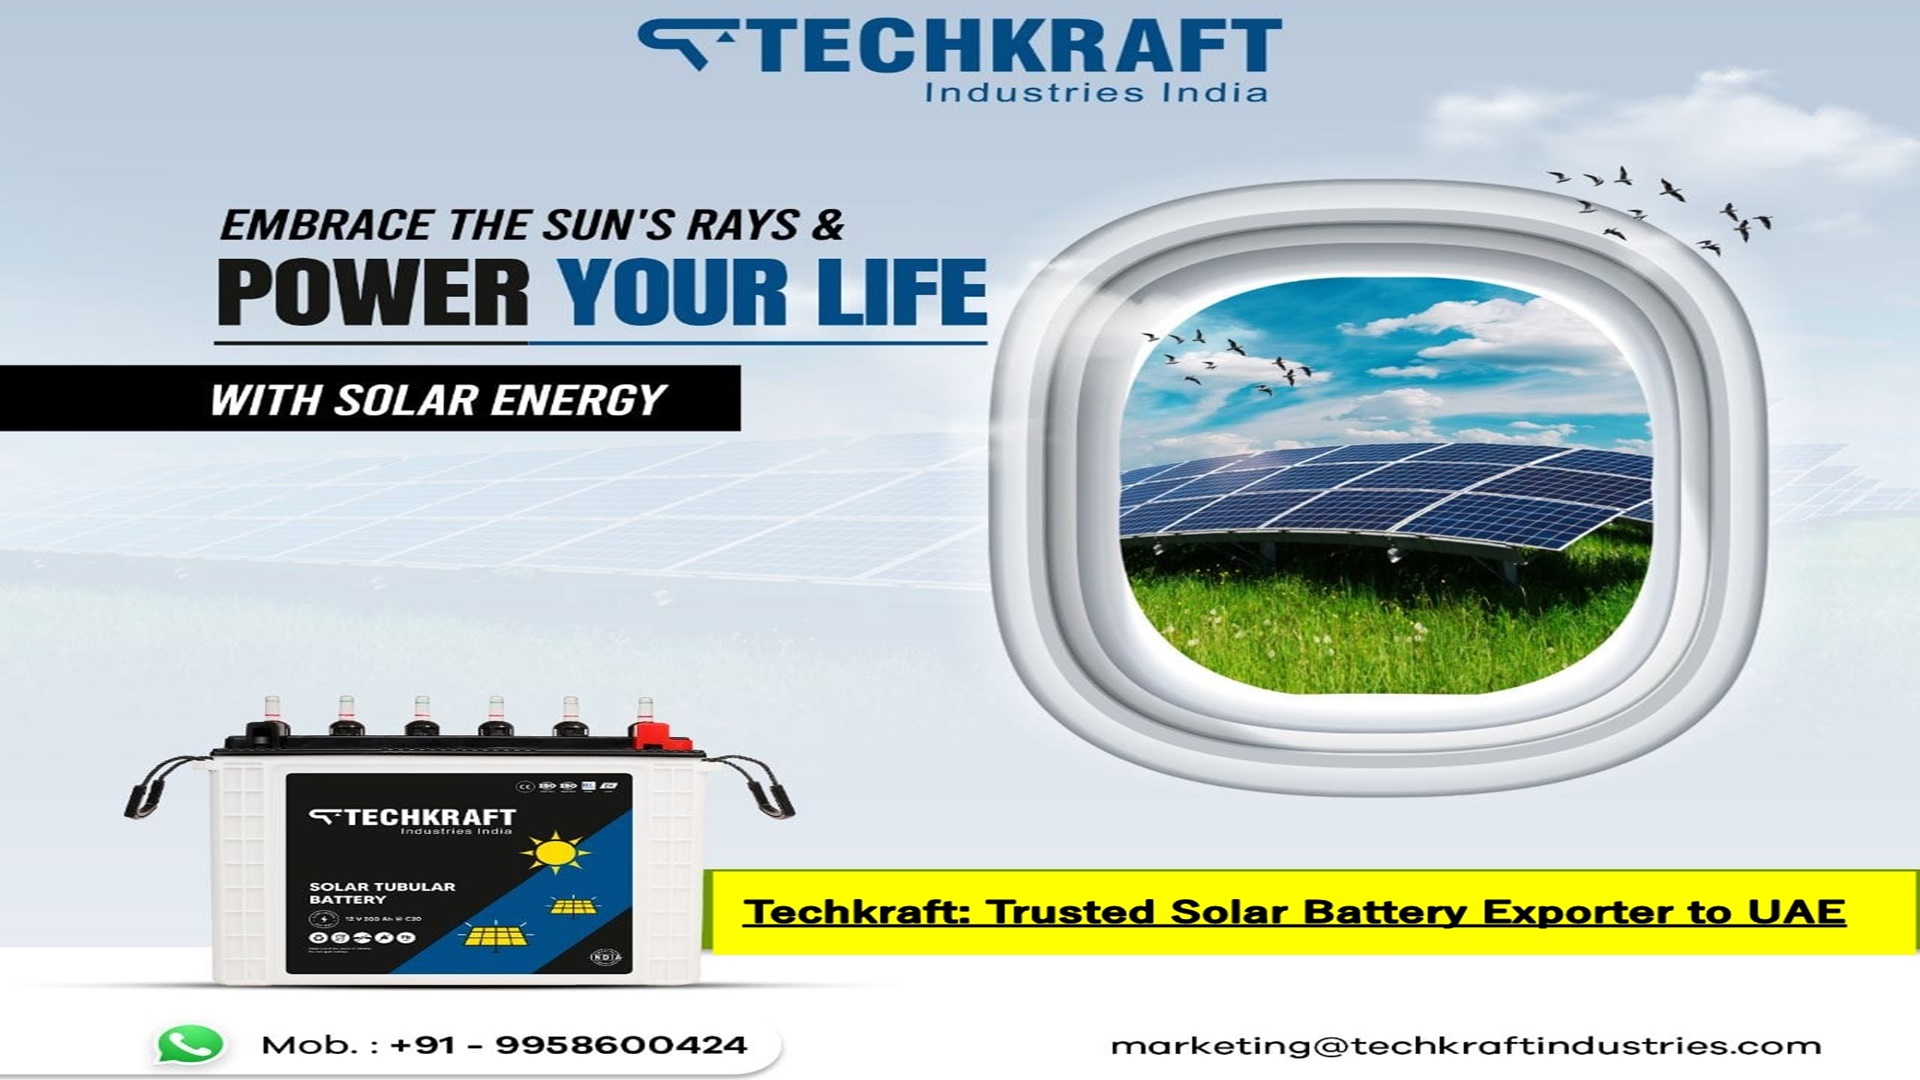 Techkraft: Trusted Solar Battery Exporter to UAE